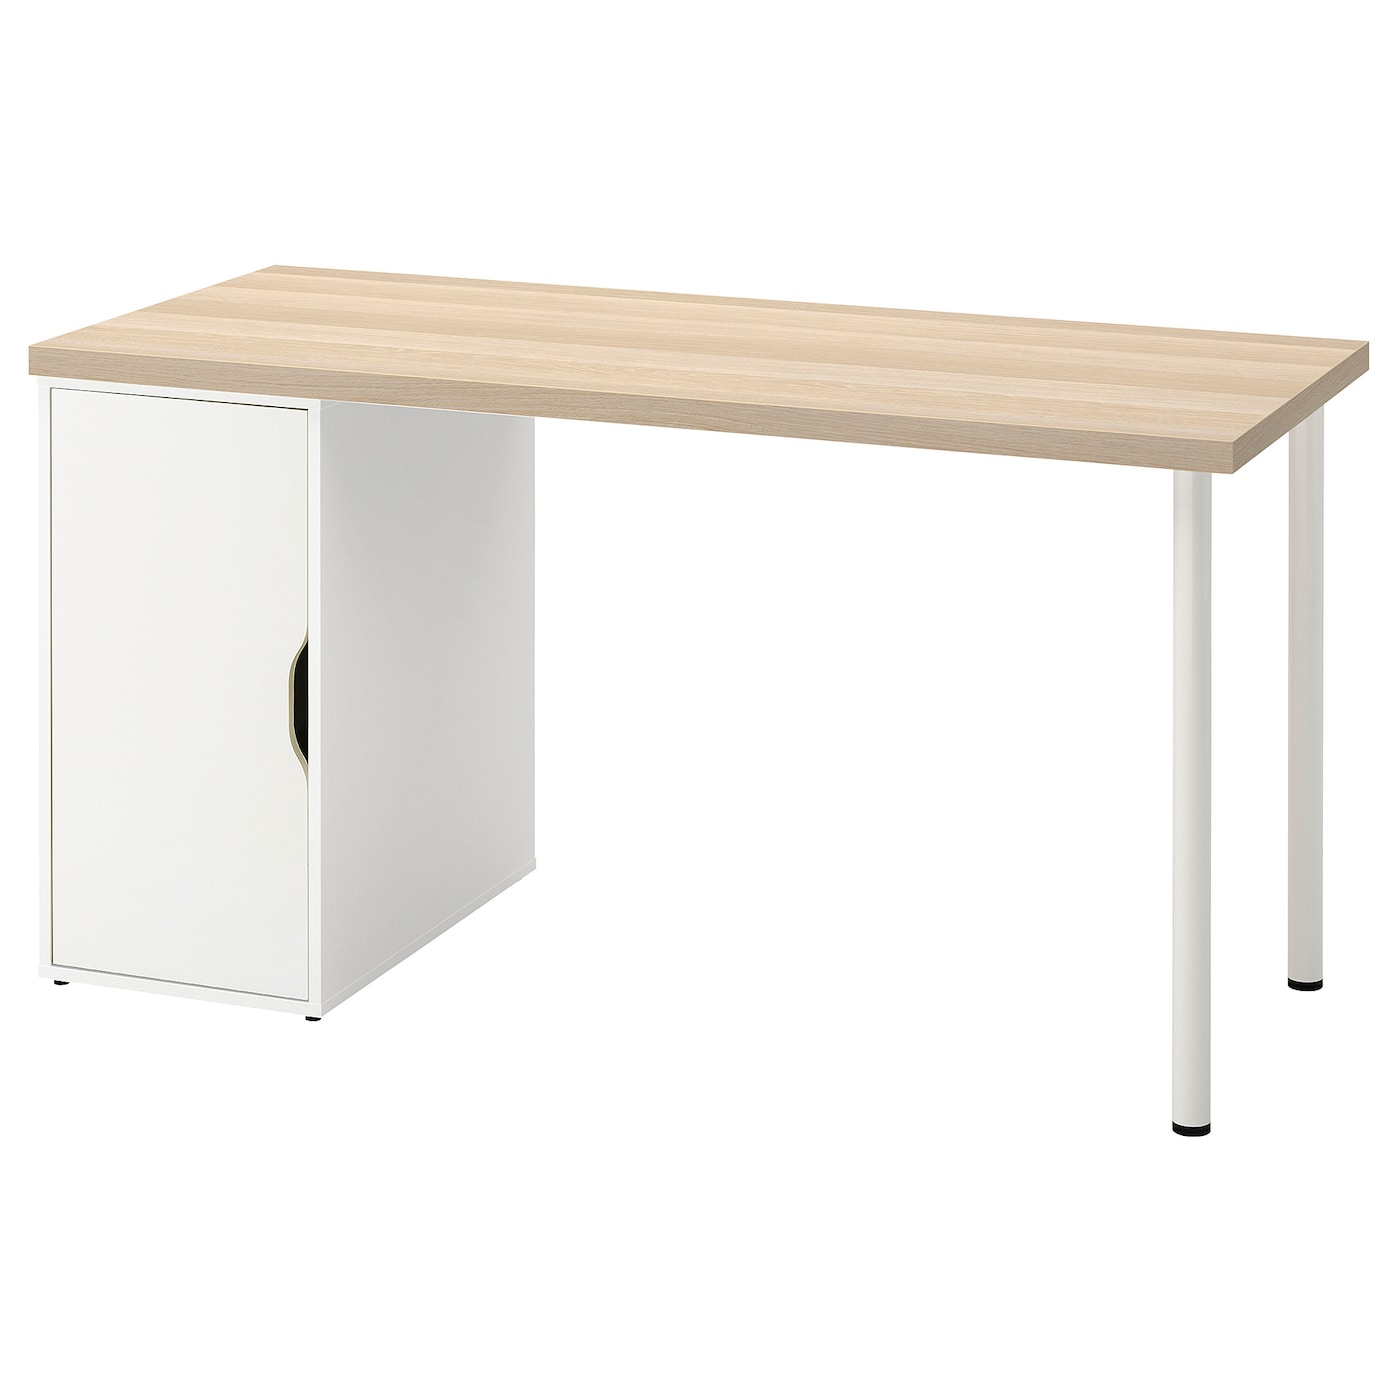 Письменный стол с ящиком - IKEA LAGKAPTEN/ALEX, 140х60 см, под беленый дуб/белый, ЛАГКАПТЕН/АЛЕКС ИКЕА